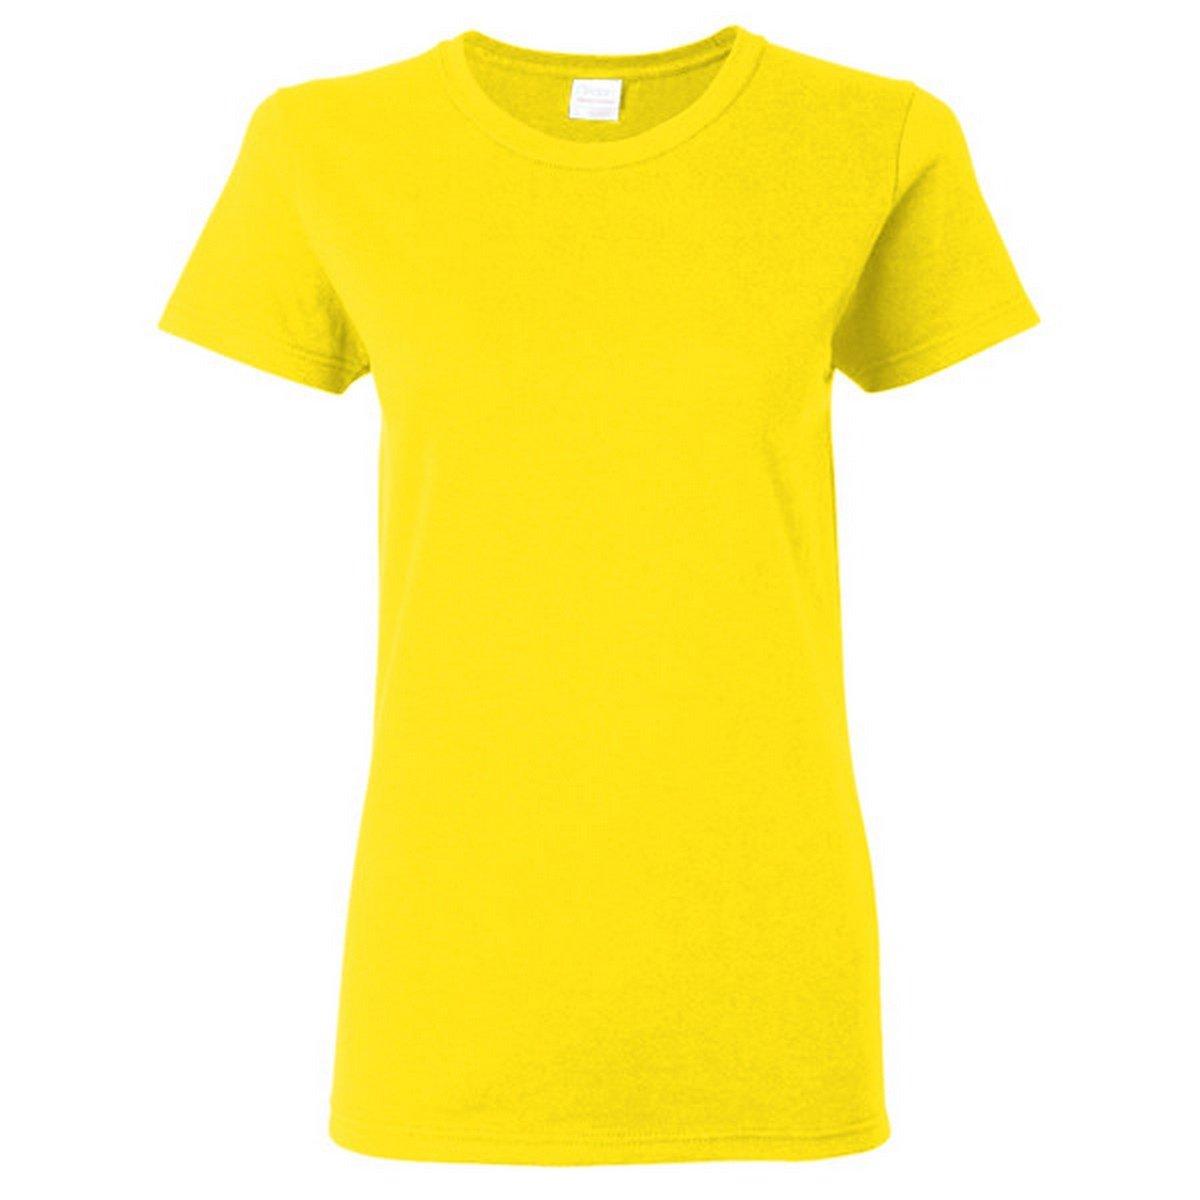 Tshirt, Enganliegend Damen Gelb Bunt S von Gildan